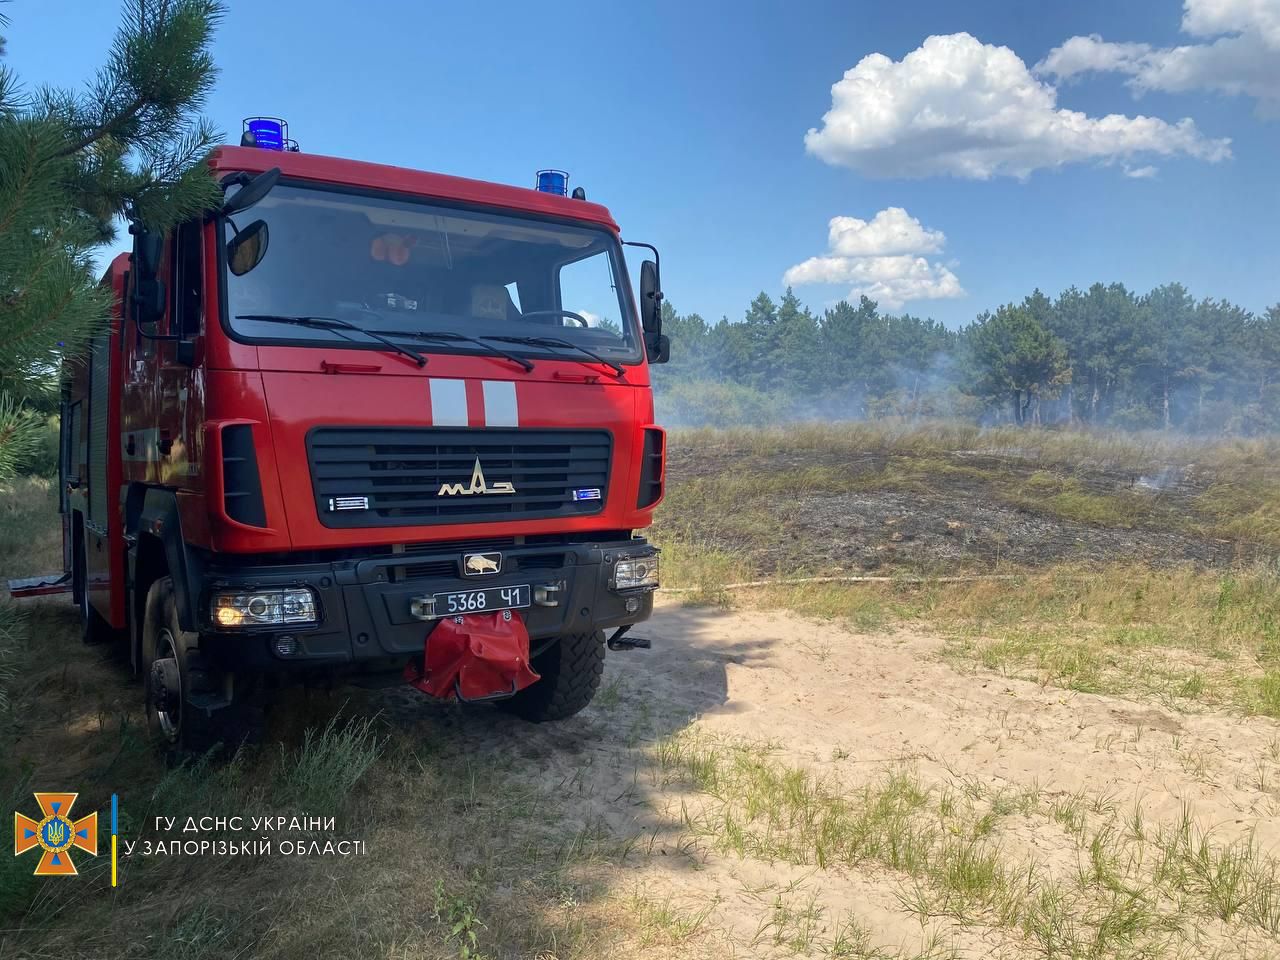 Стало известно, сколько гектаров леса сгорело на запорожской Хортице (ФОТО)